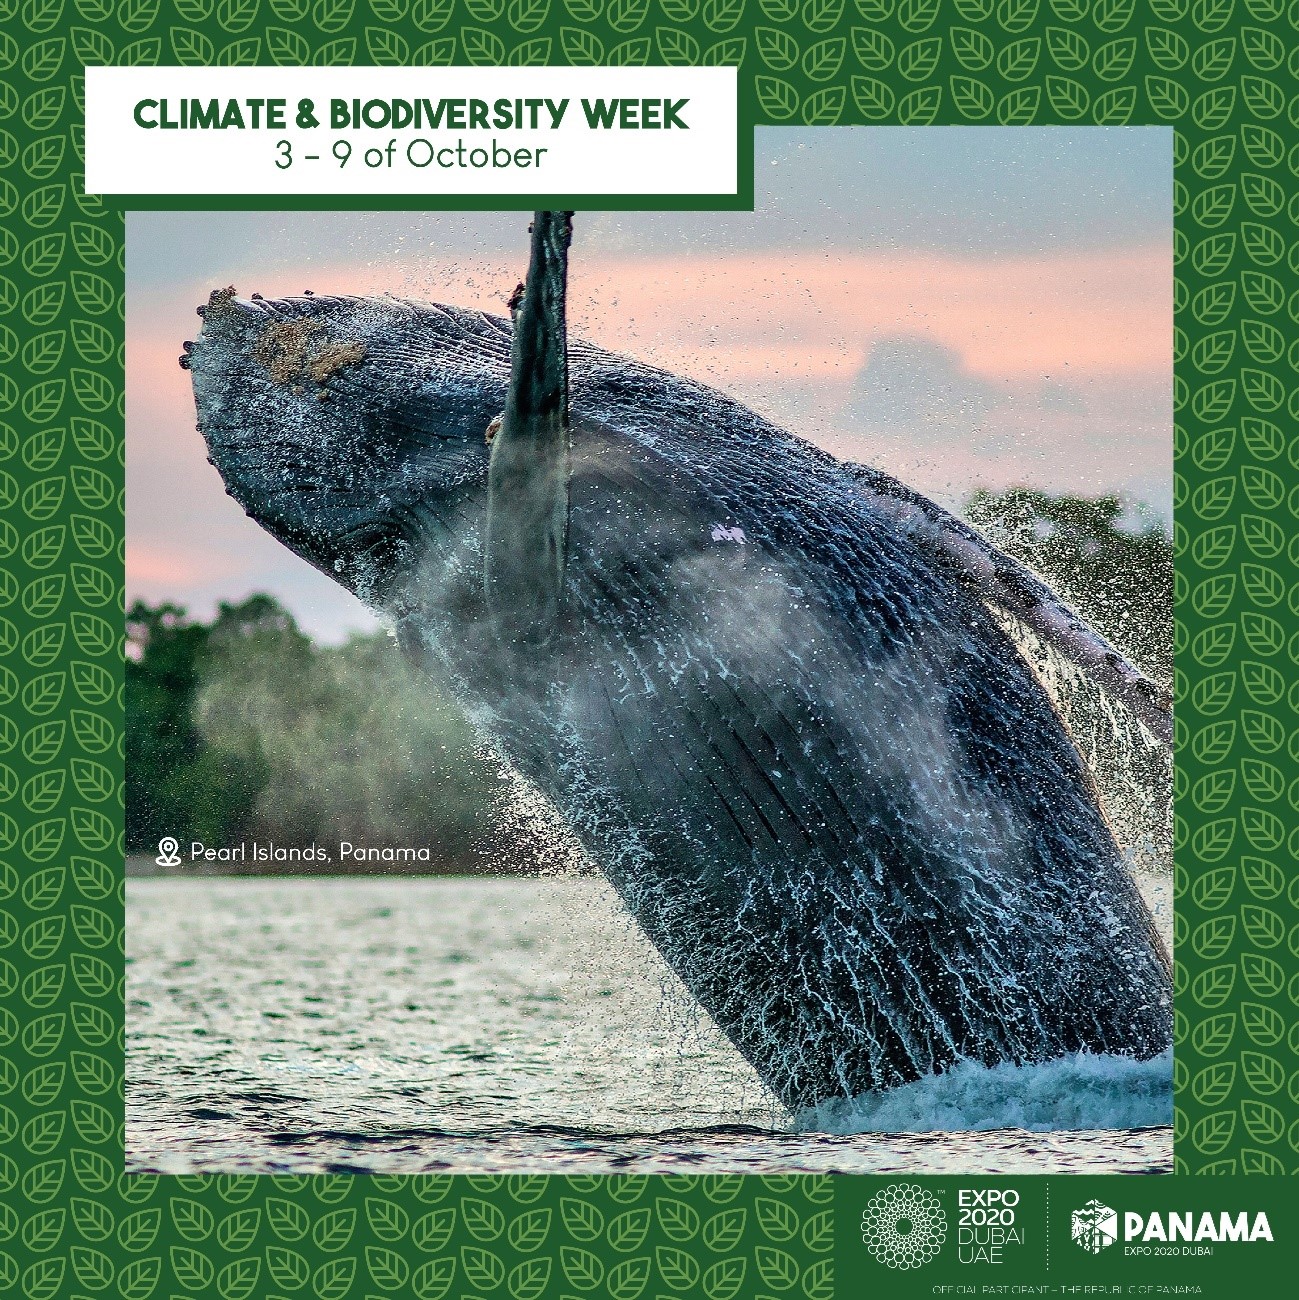 Finaliza la Semana de Clima y Biodiversidad en Expo 2020 Dubái Panamá invita al mundo a continuar el diálogo en Our Ocean 2023.